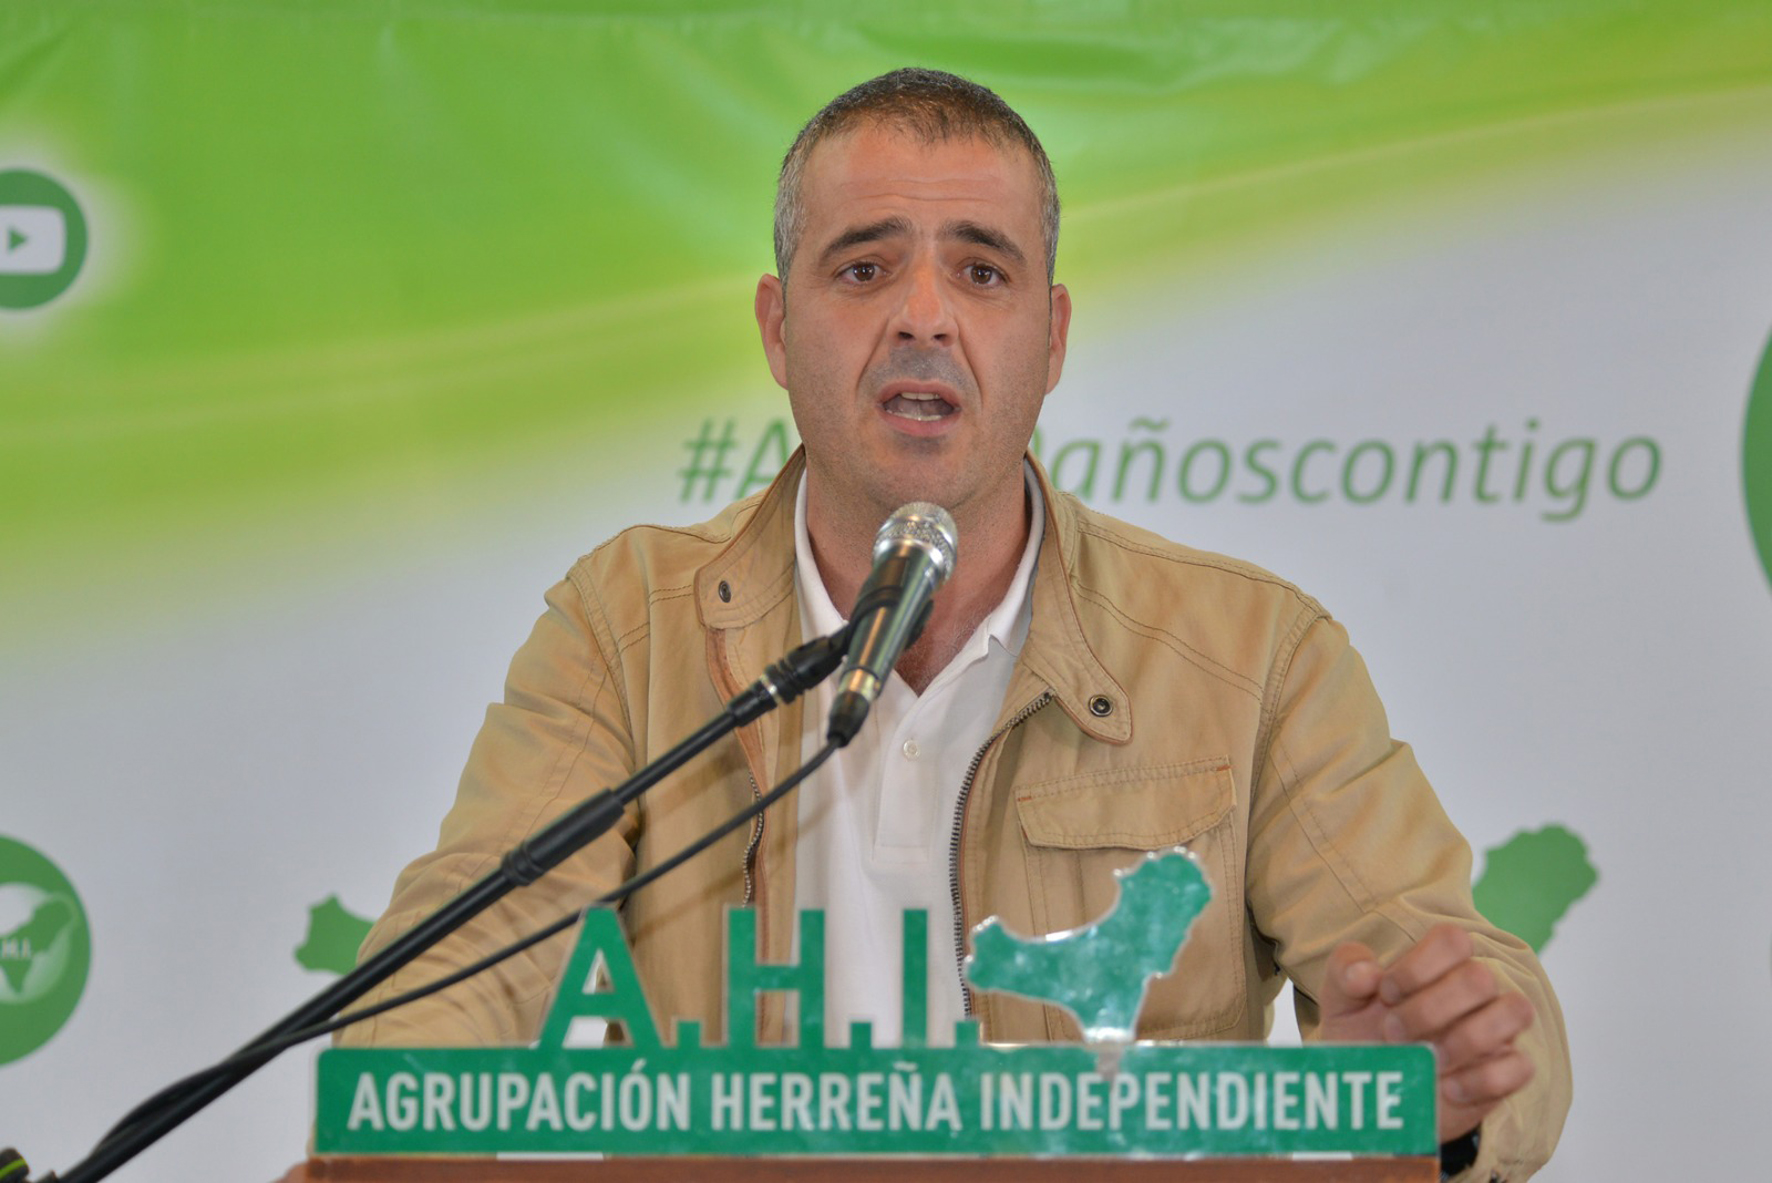 AHI en Valverde pide que se abone el dinero de las fiestas a las asociaciones de vecinos del municipio para que se dedique a otros fines